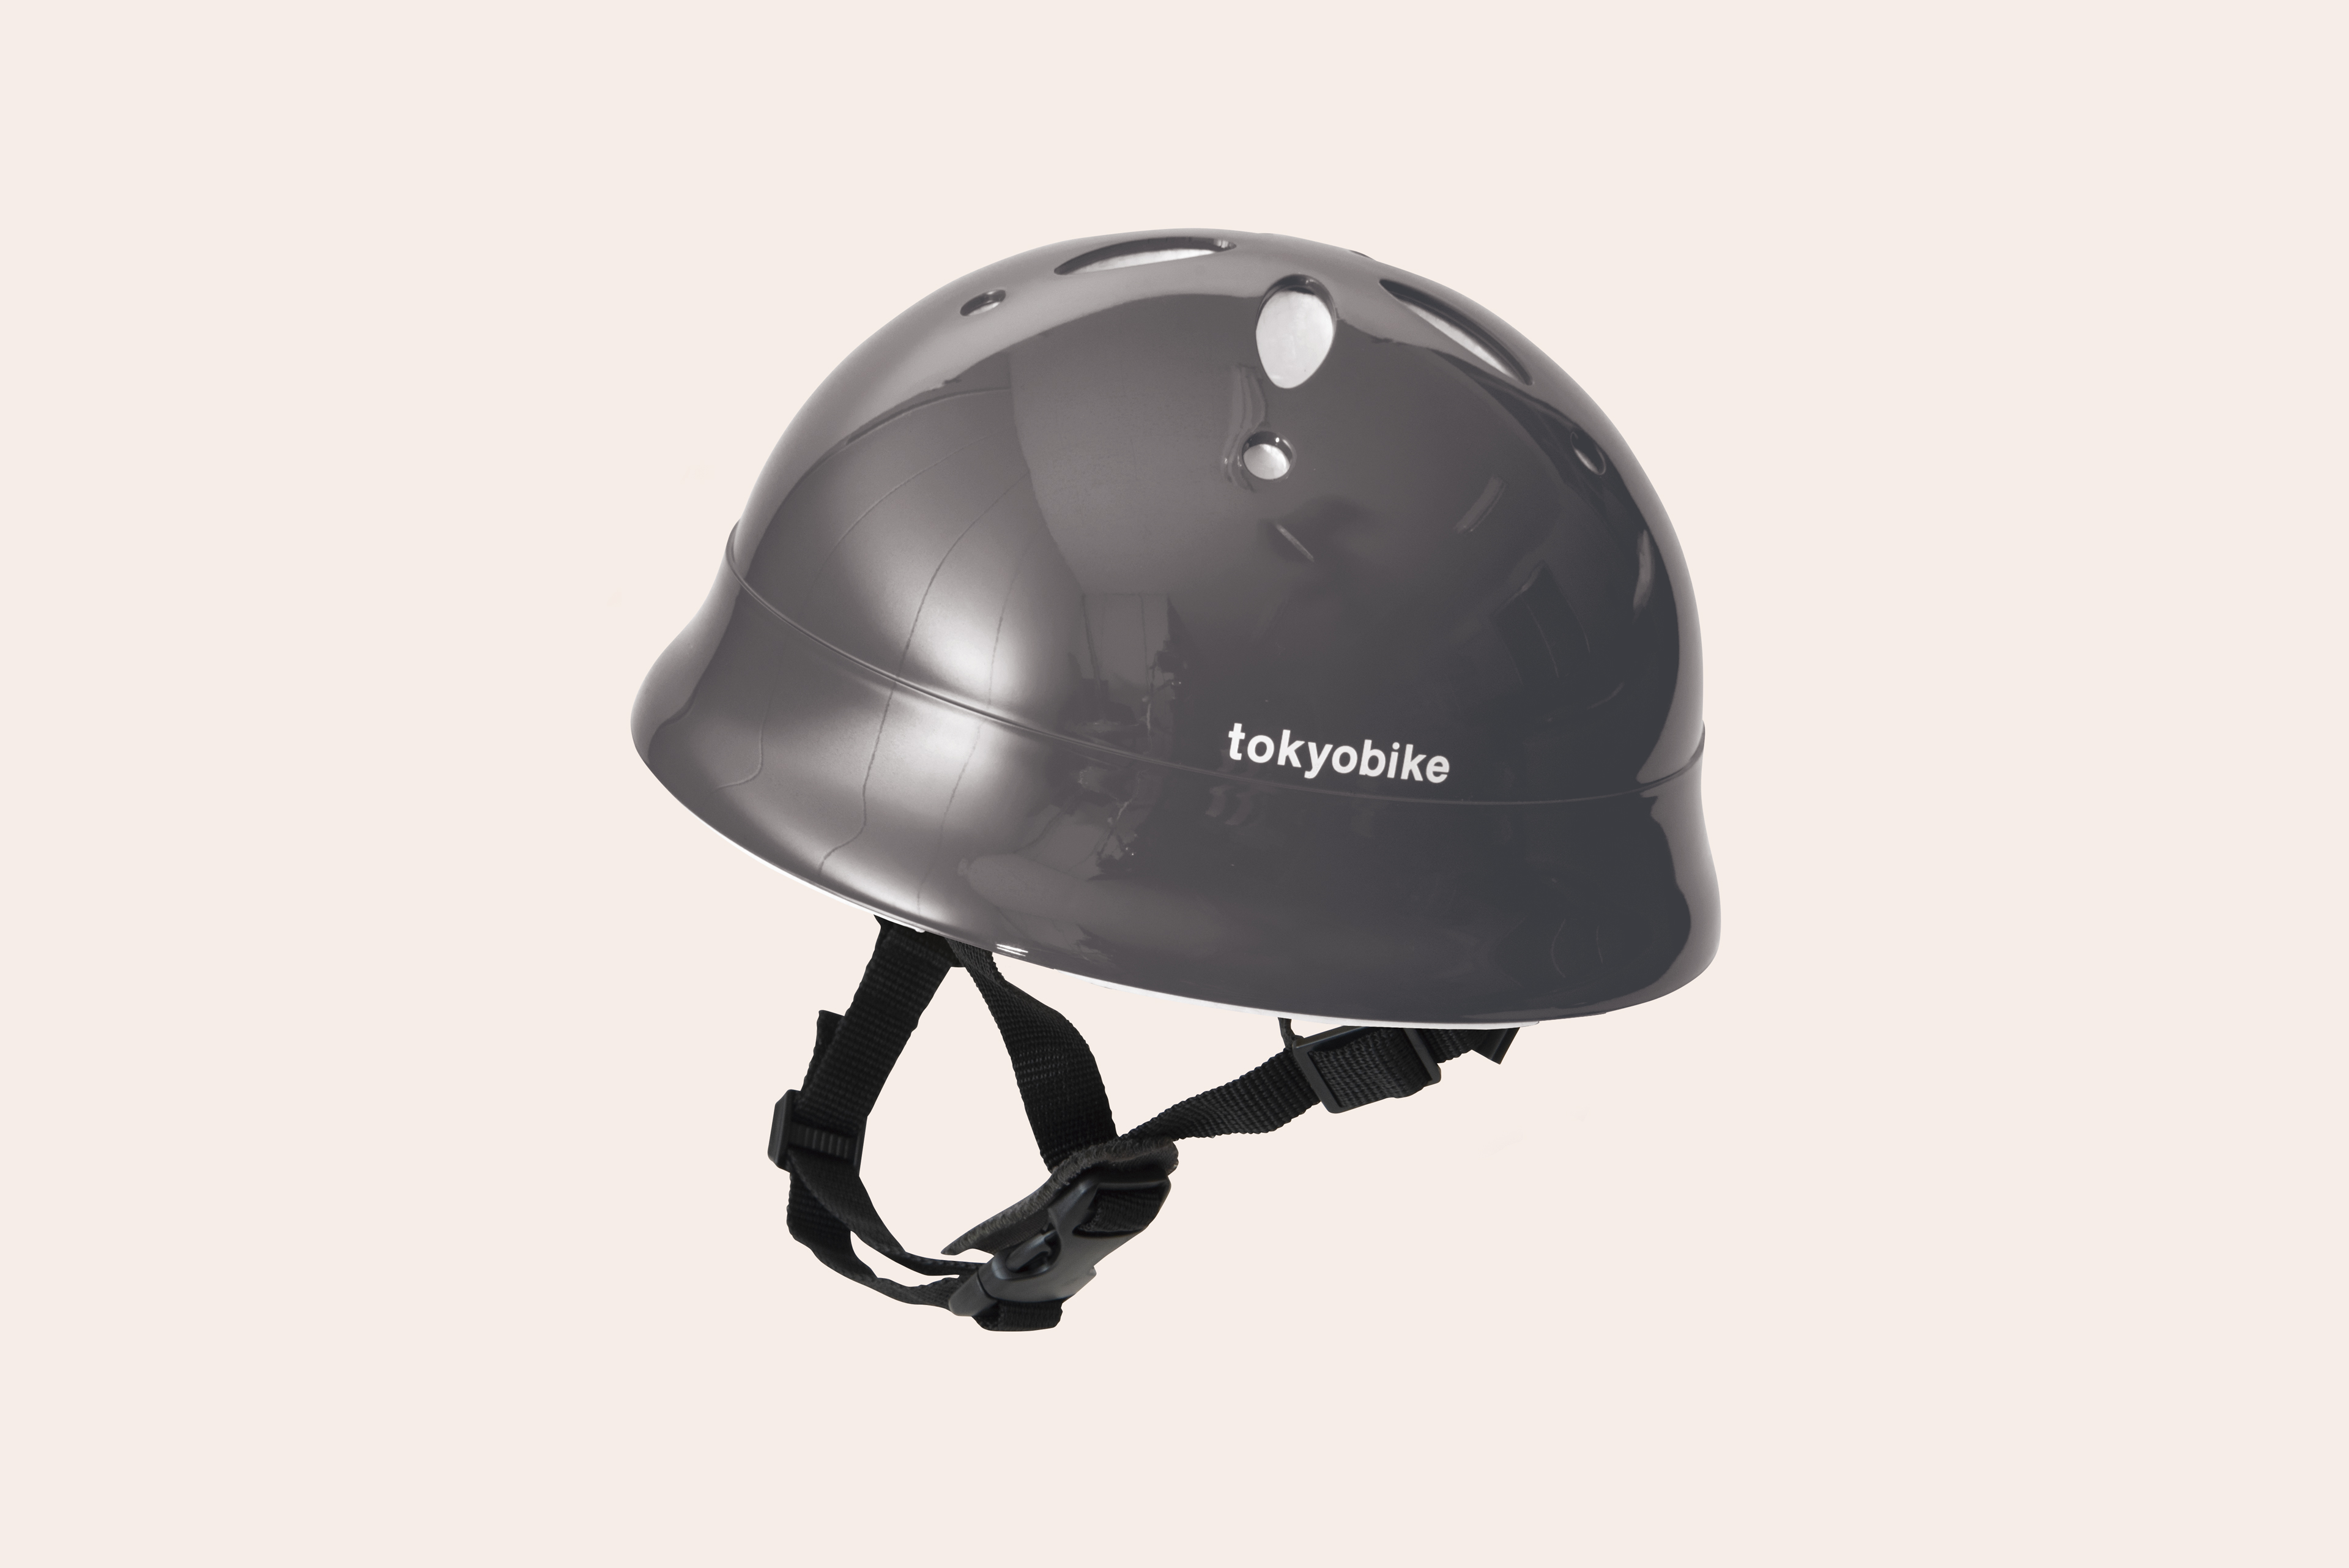 ベビーLヘルメット tokyobike Limited tokyobike